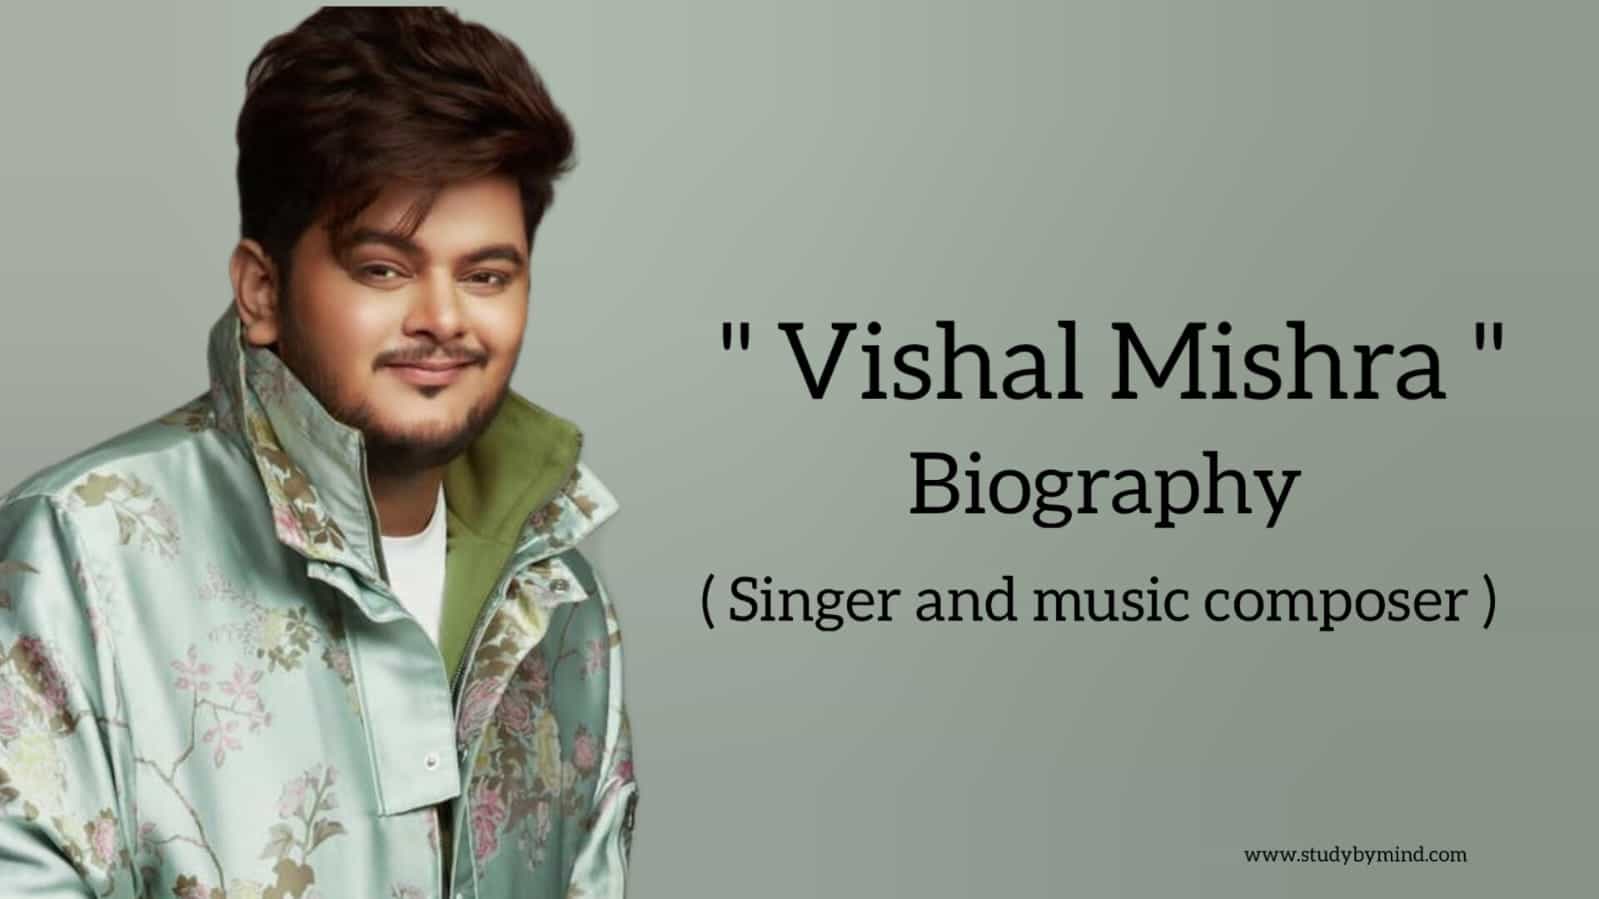 Vishal mishra biography